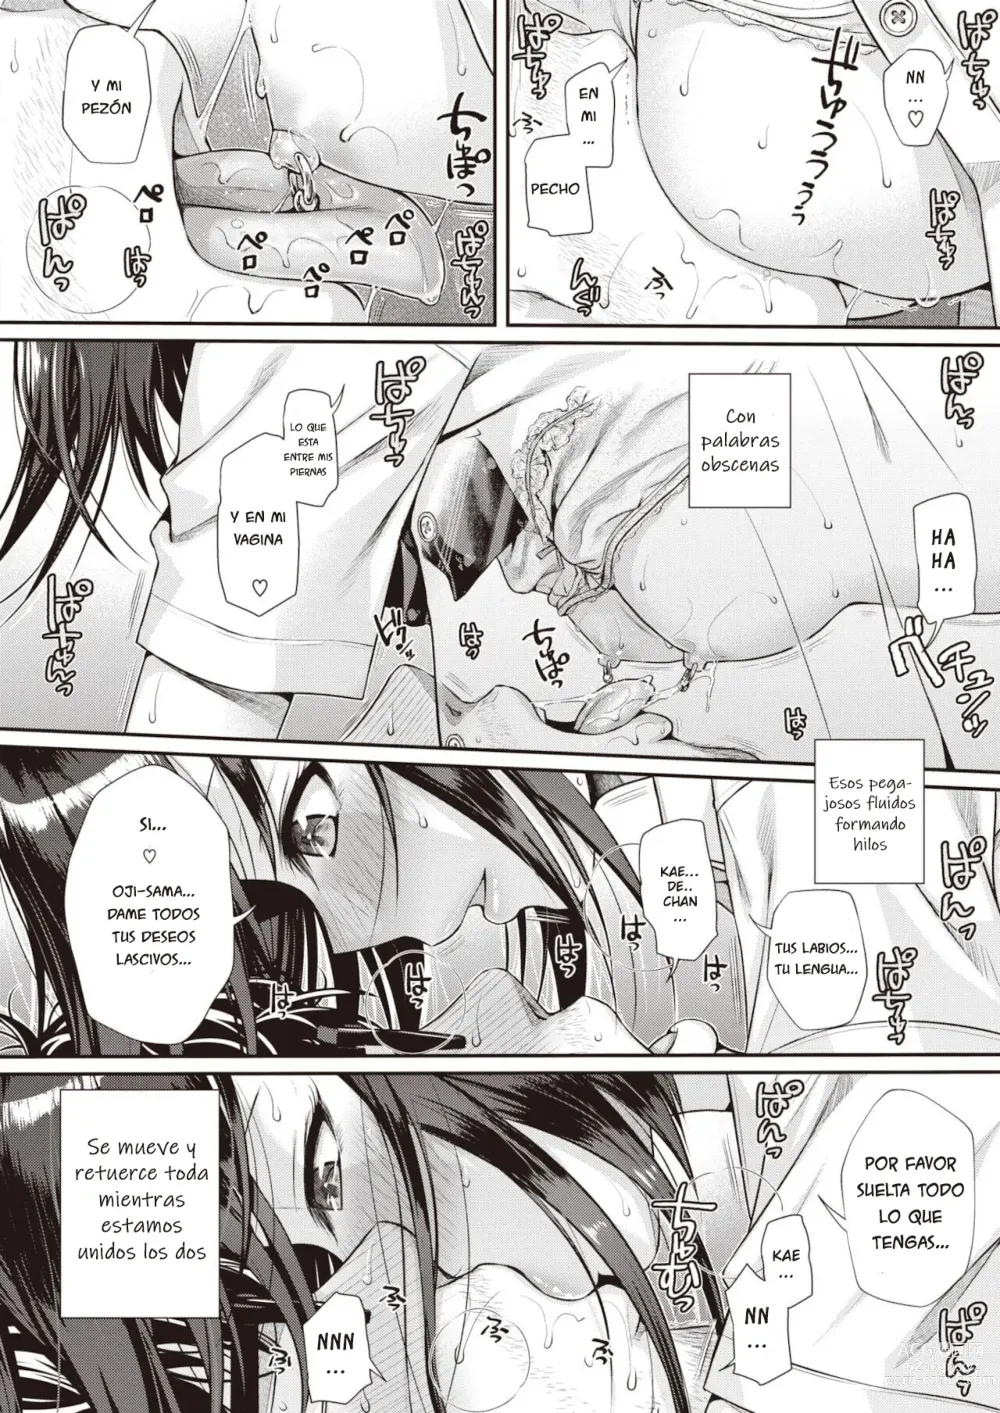 Page 40 of manga Kuchinawa no Ring